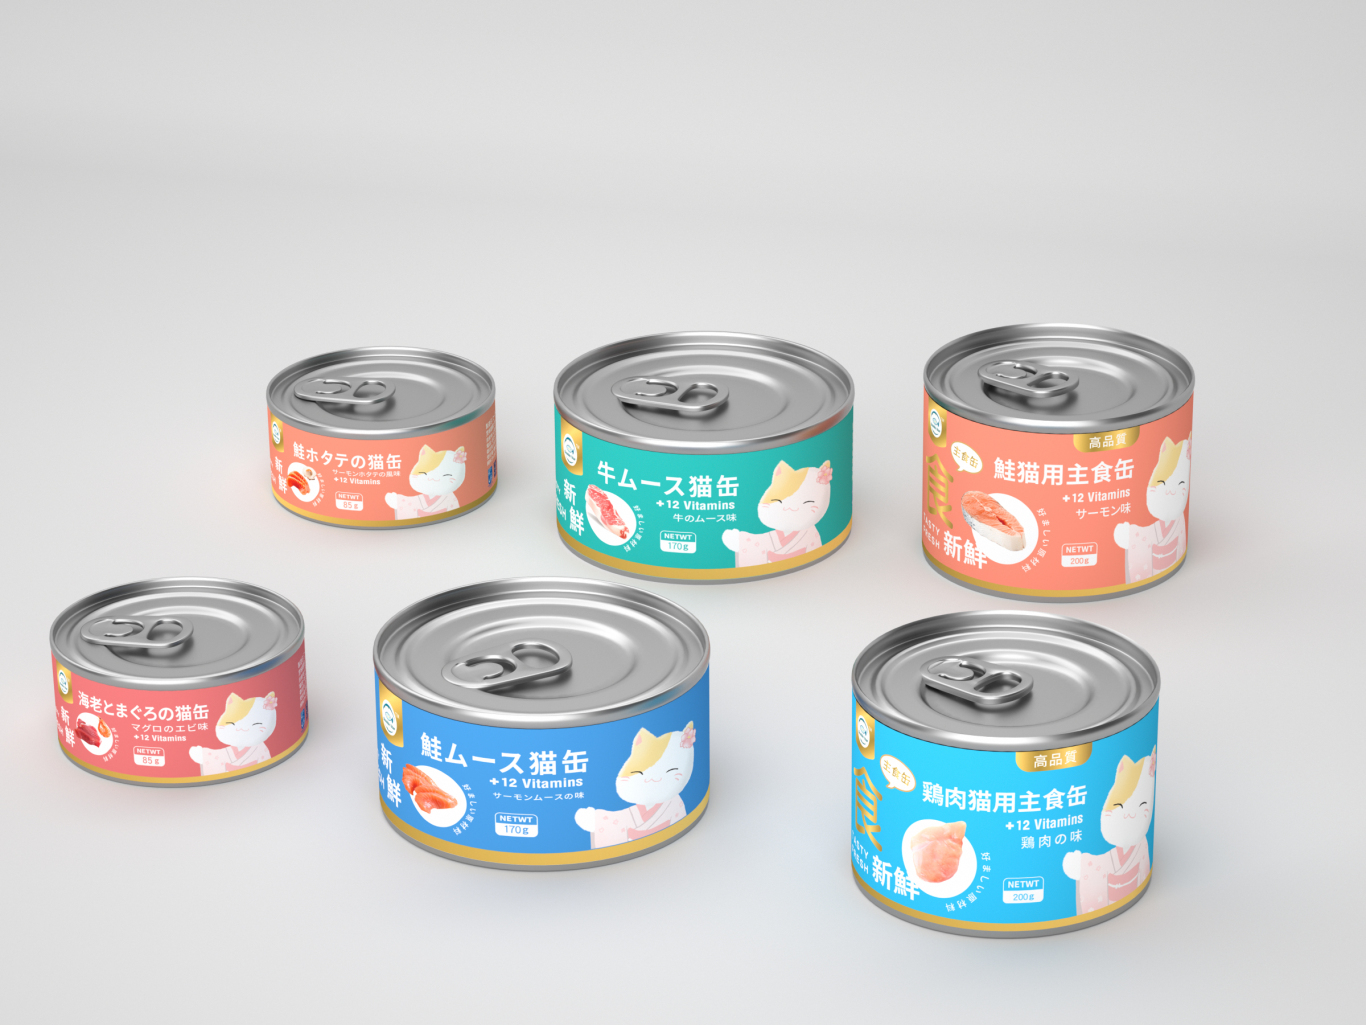 日本品牌猫条系列包装设计图6